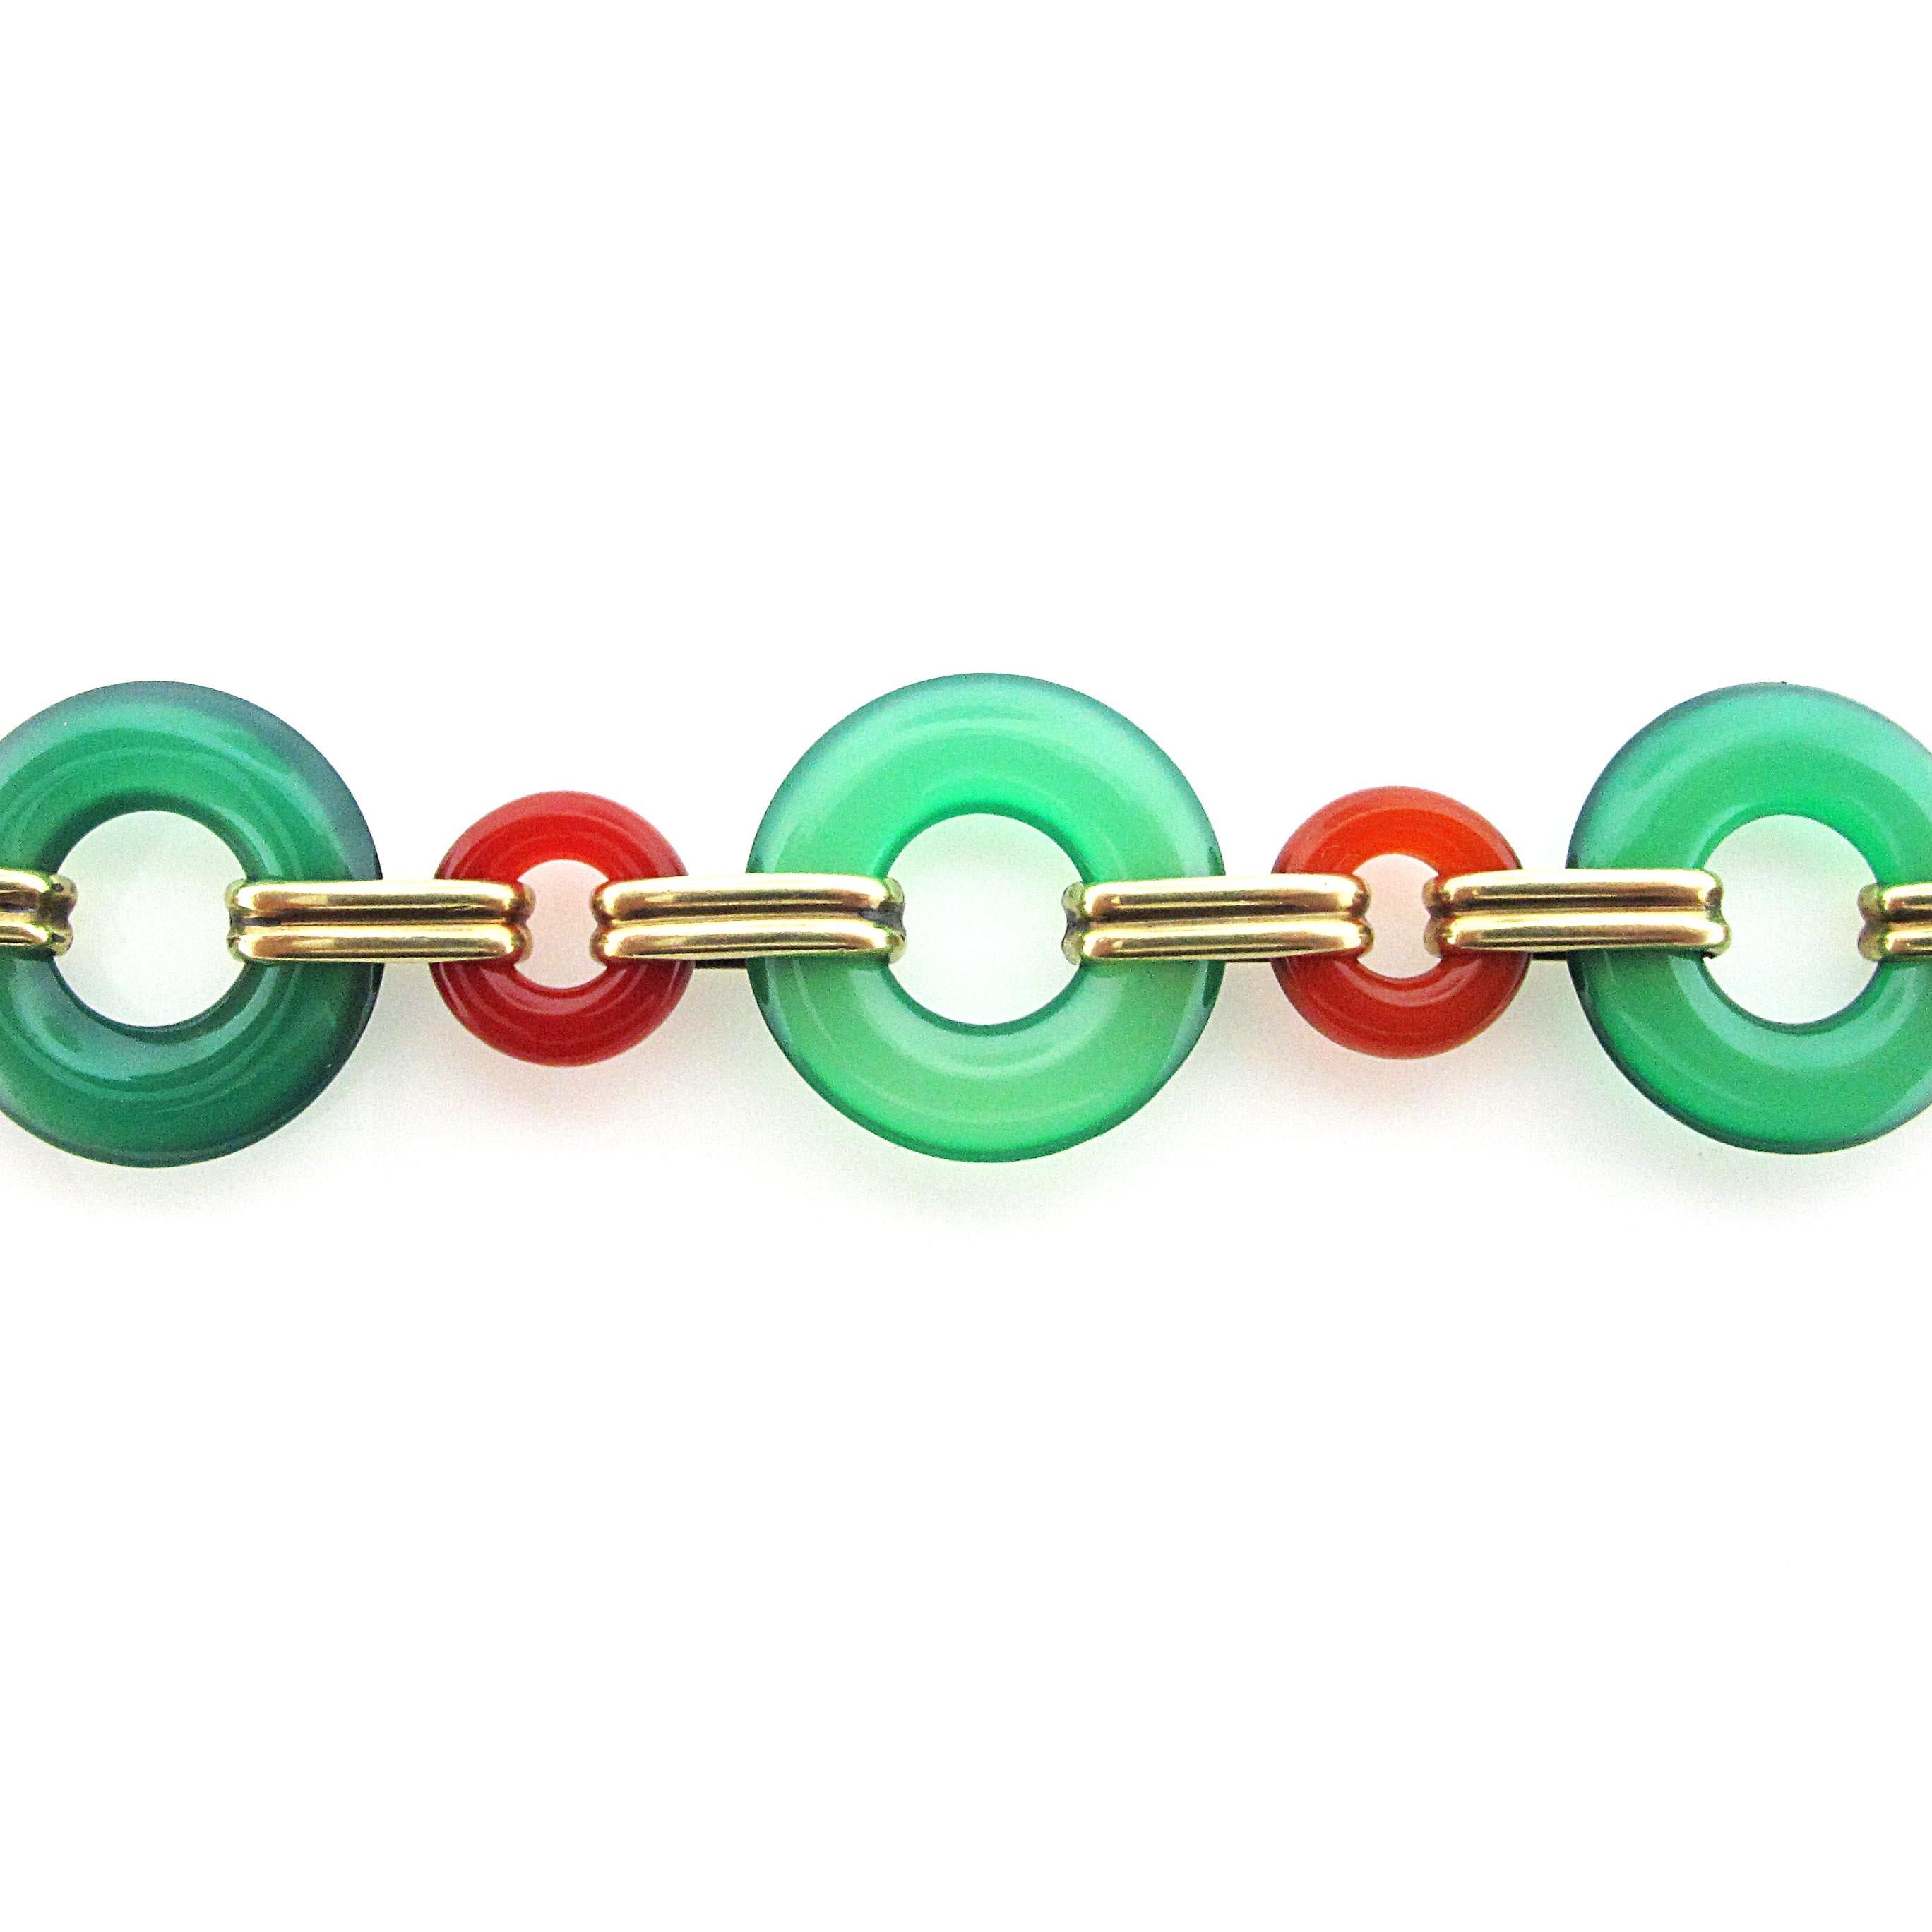 Bracelet en onyx vert à maillons rétro, très tendance. Le bracelet a un grand mouvement et est très confortable à porter. Les liens sont maintenus ensemble par de l'or jaune 14 carats.
Le bracelet mesure 7 pouces de long